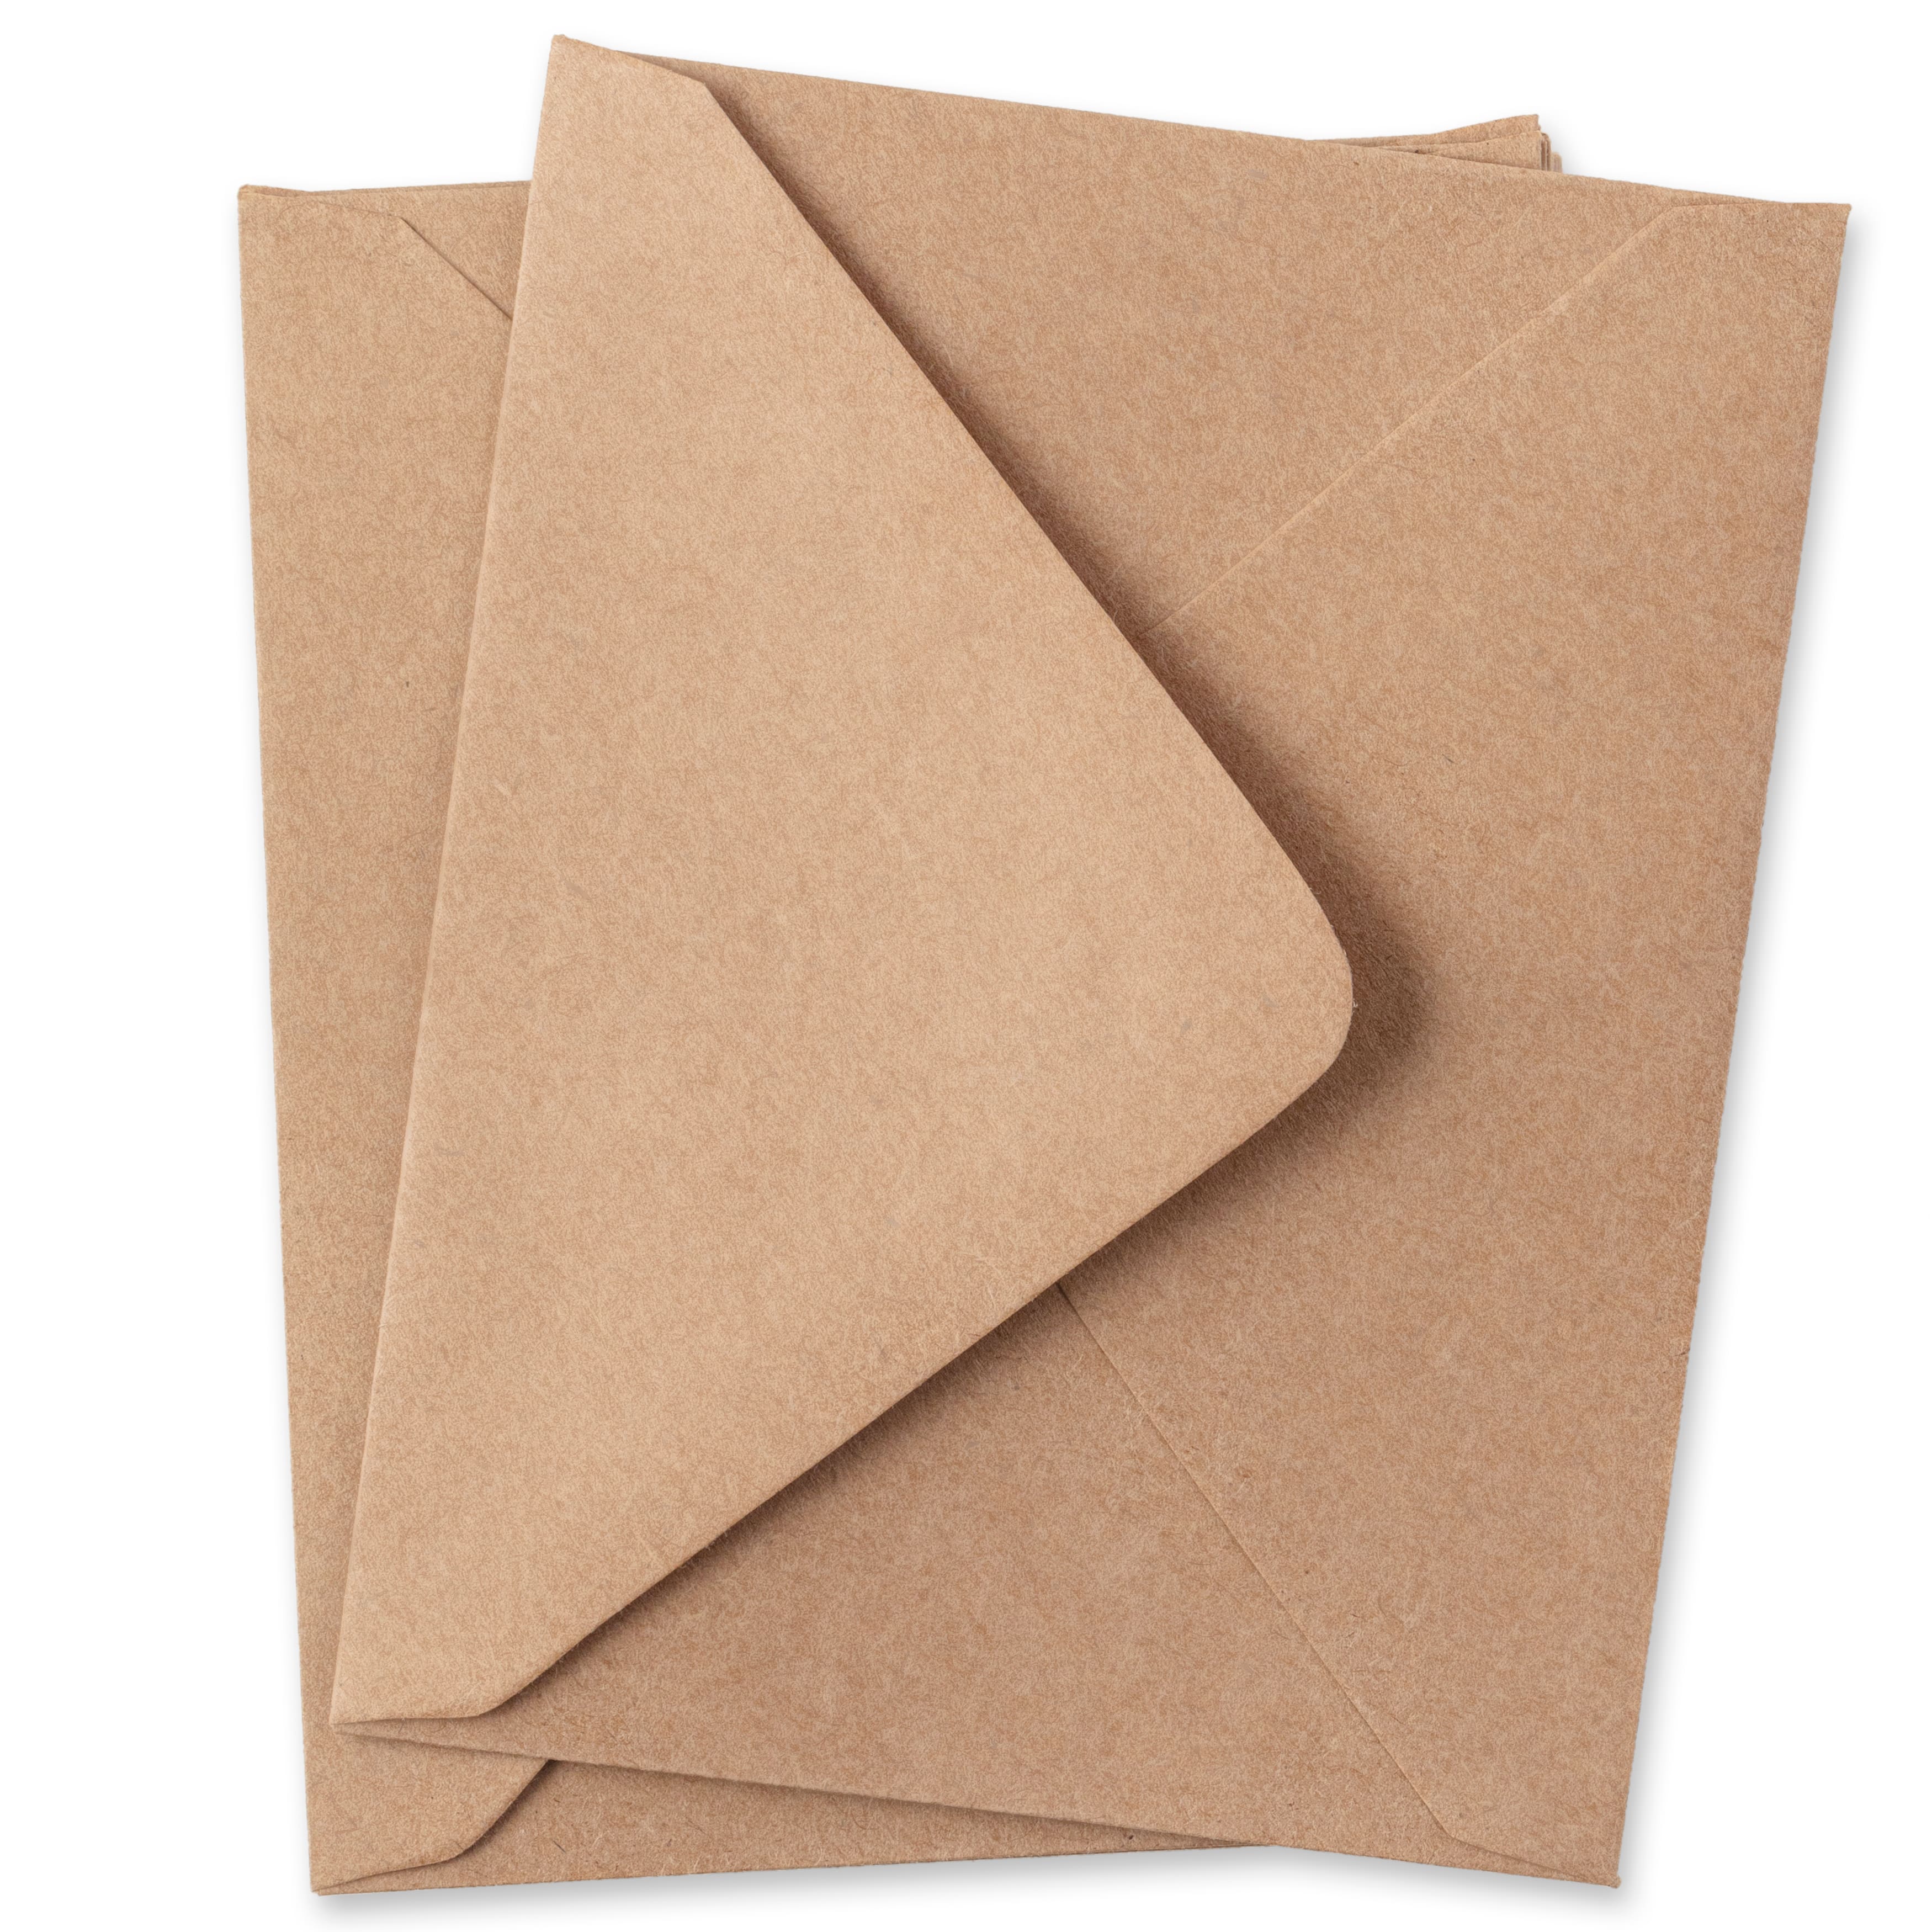 Enveloppes en papier kraft de 11,7 cm x 14,6 cm, 50 unités de Recollections